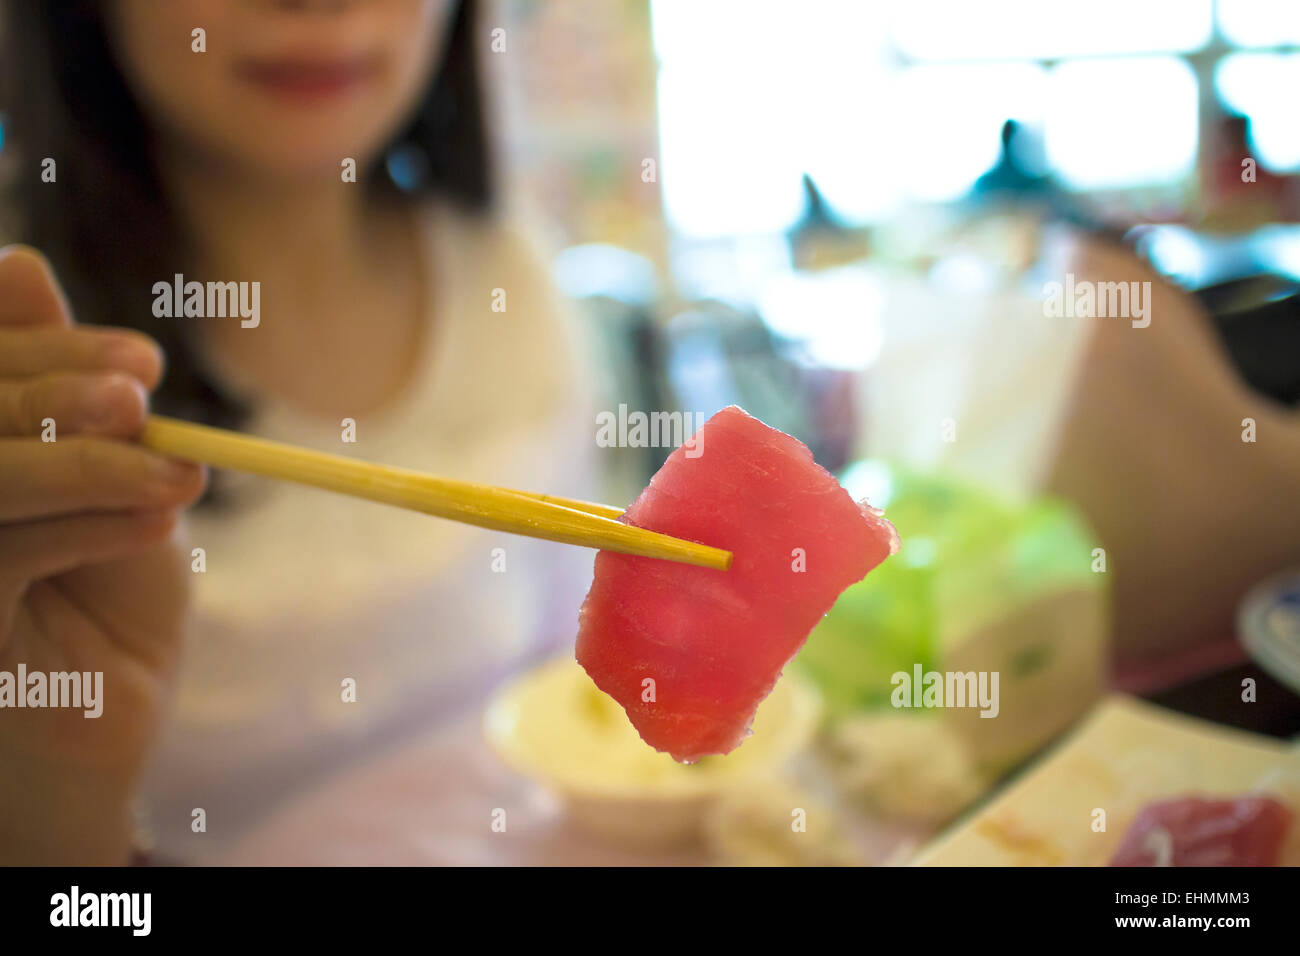 woman ready to eat sashimi in restaurant Stock Photo